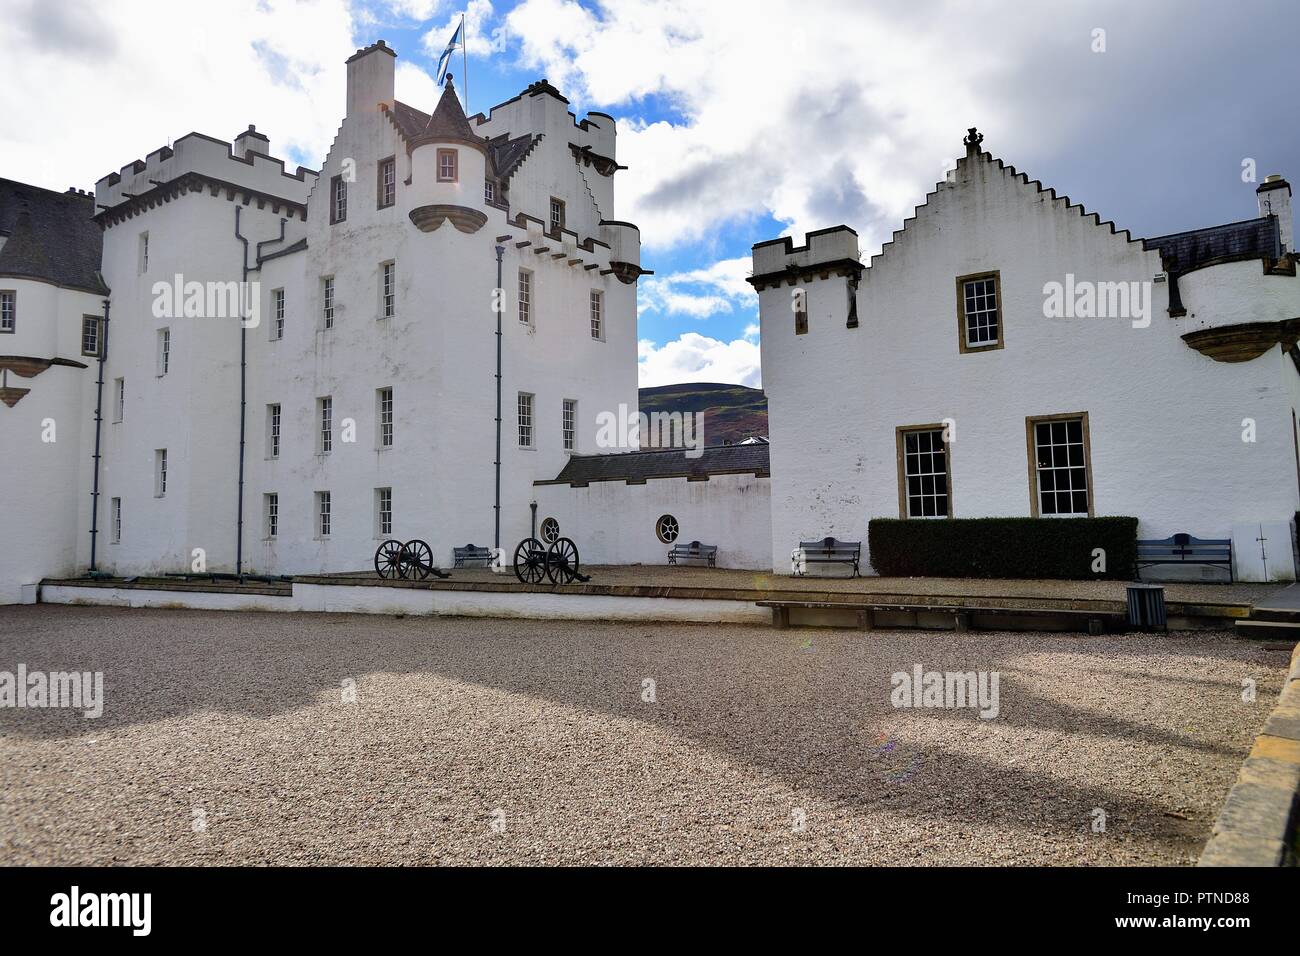 Blair Atholl, Écosse, Royaume-Uni. Les fondations du château de Blair datent du XIIIe siècle et aujourd'hui, sont l'un des châteaux les plus majestueux d'Écosse. Banque D'Images